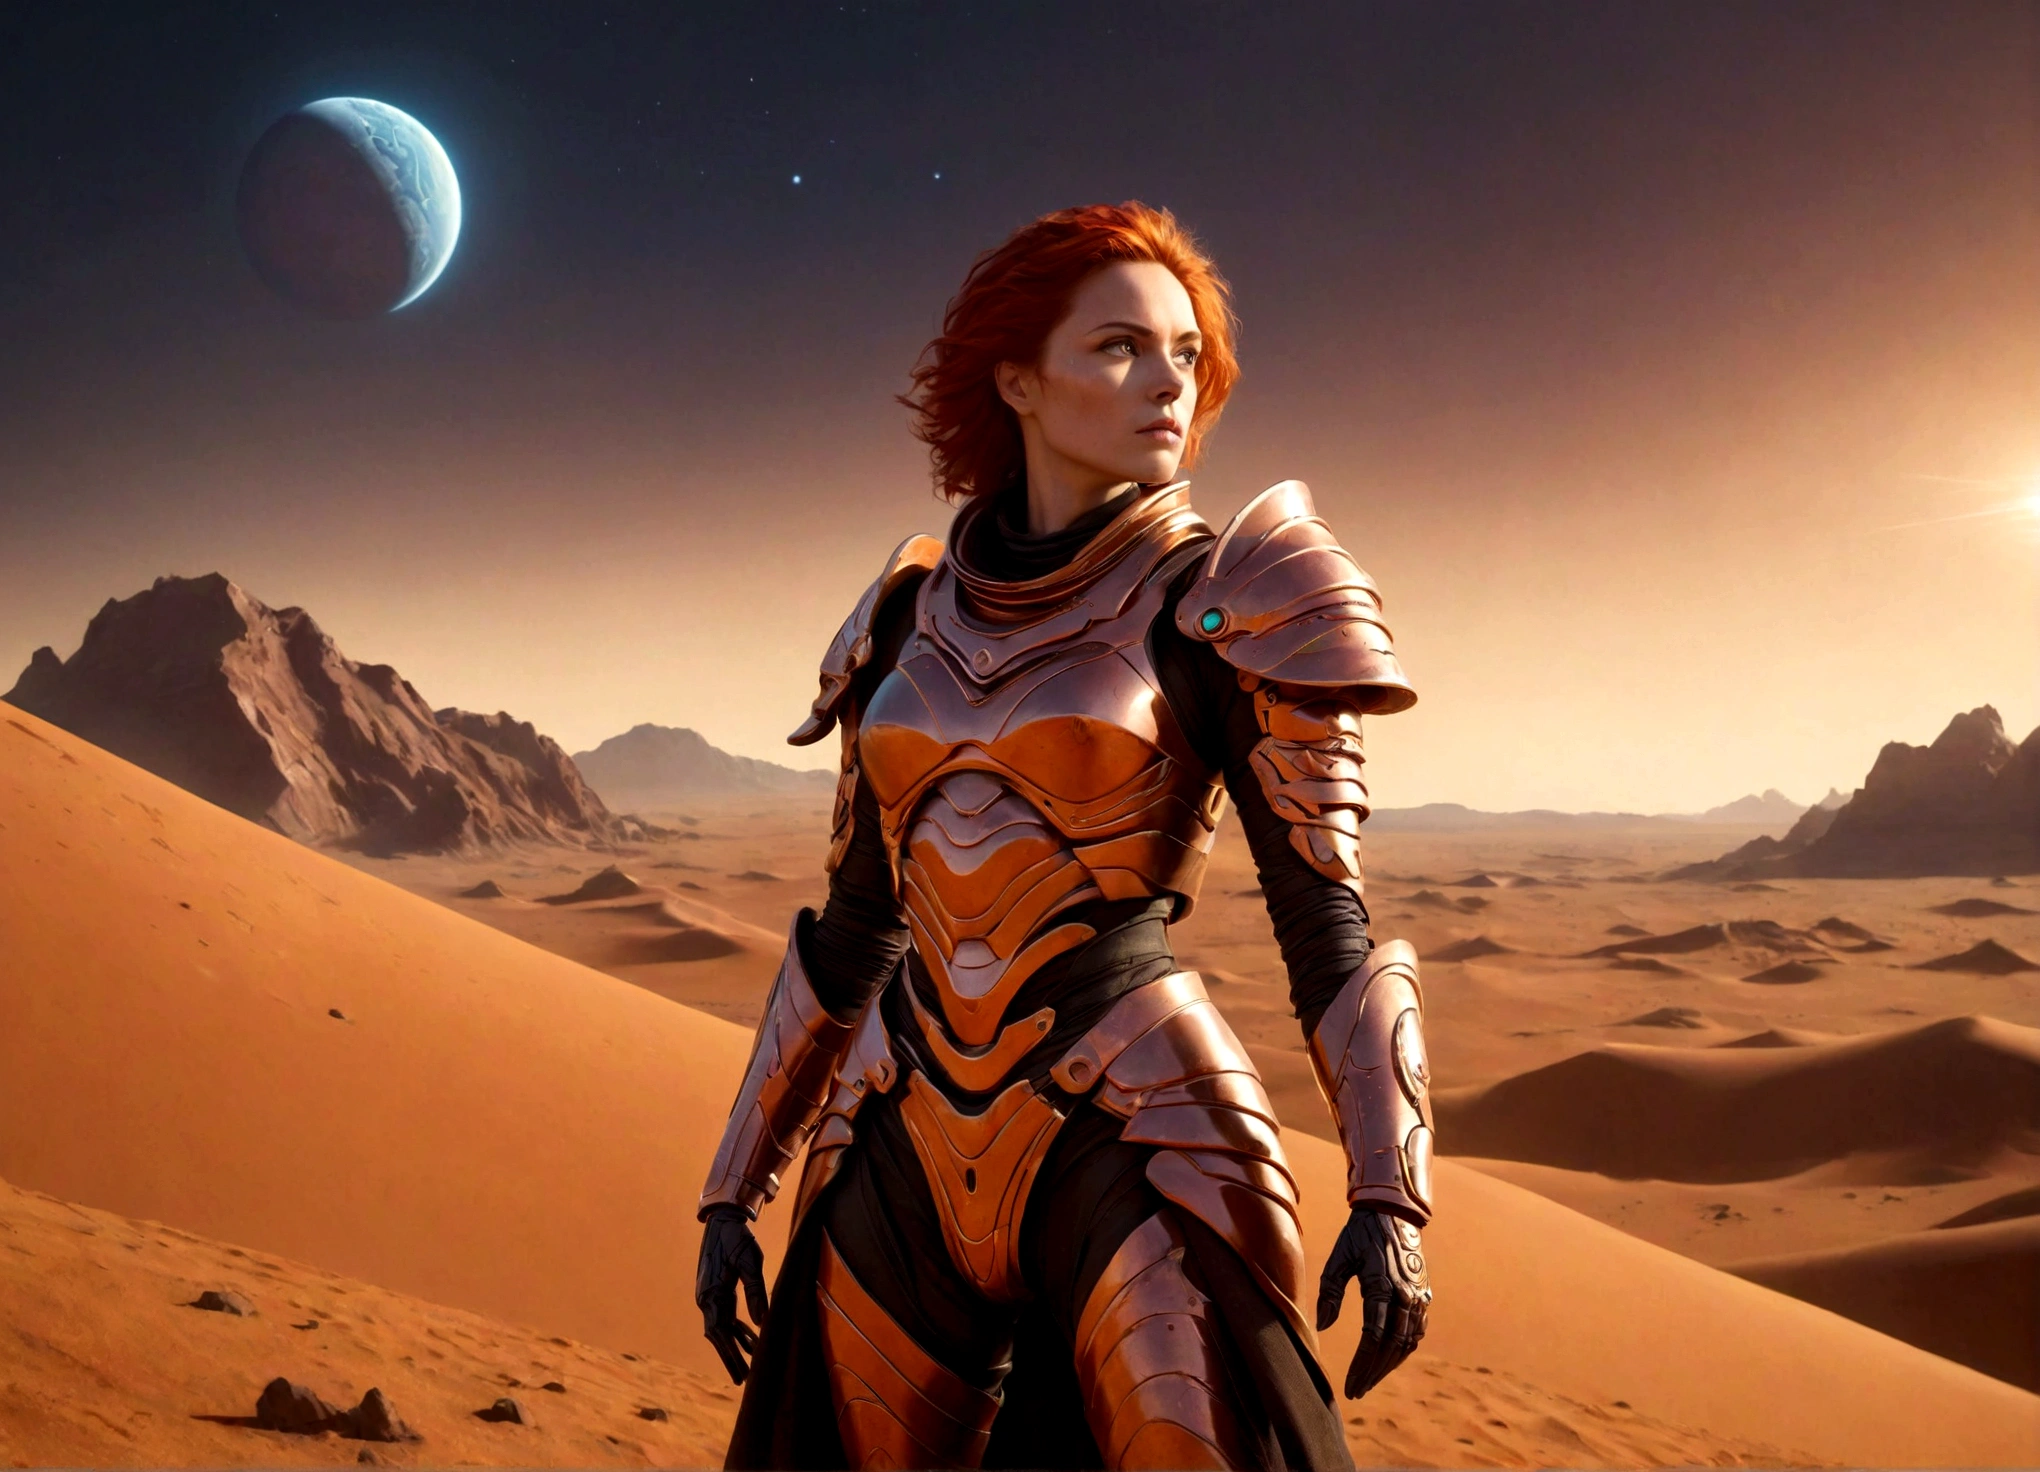 火星の戦士女王, デューンスタイル, 非常に精巧な鎧, 未来的な火星の風景, ドラマチックな照明, 映画の構成, 複雑な機械の詳細, 鮮やかな色彩, SF, 写実的な